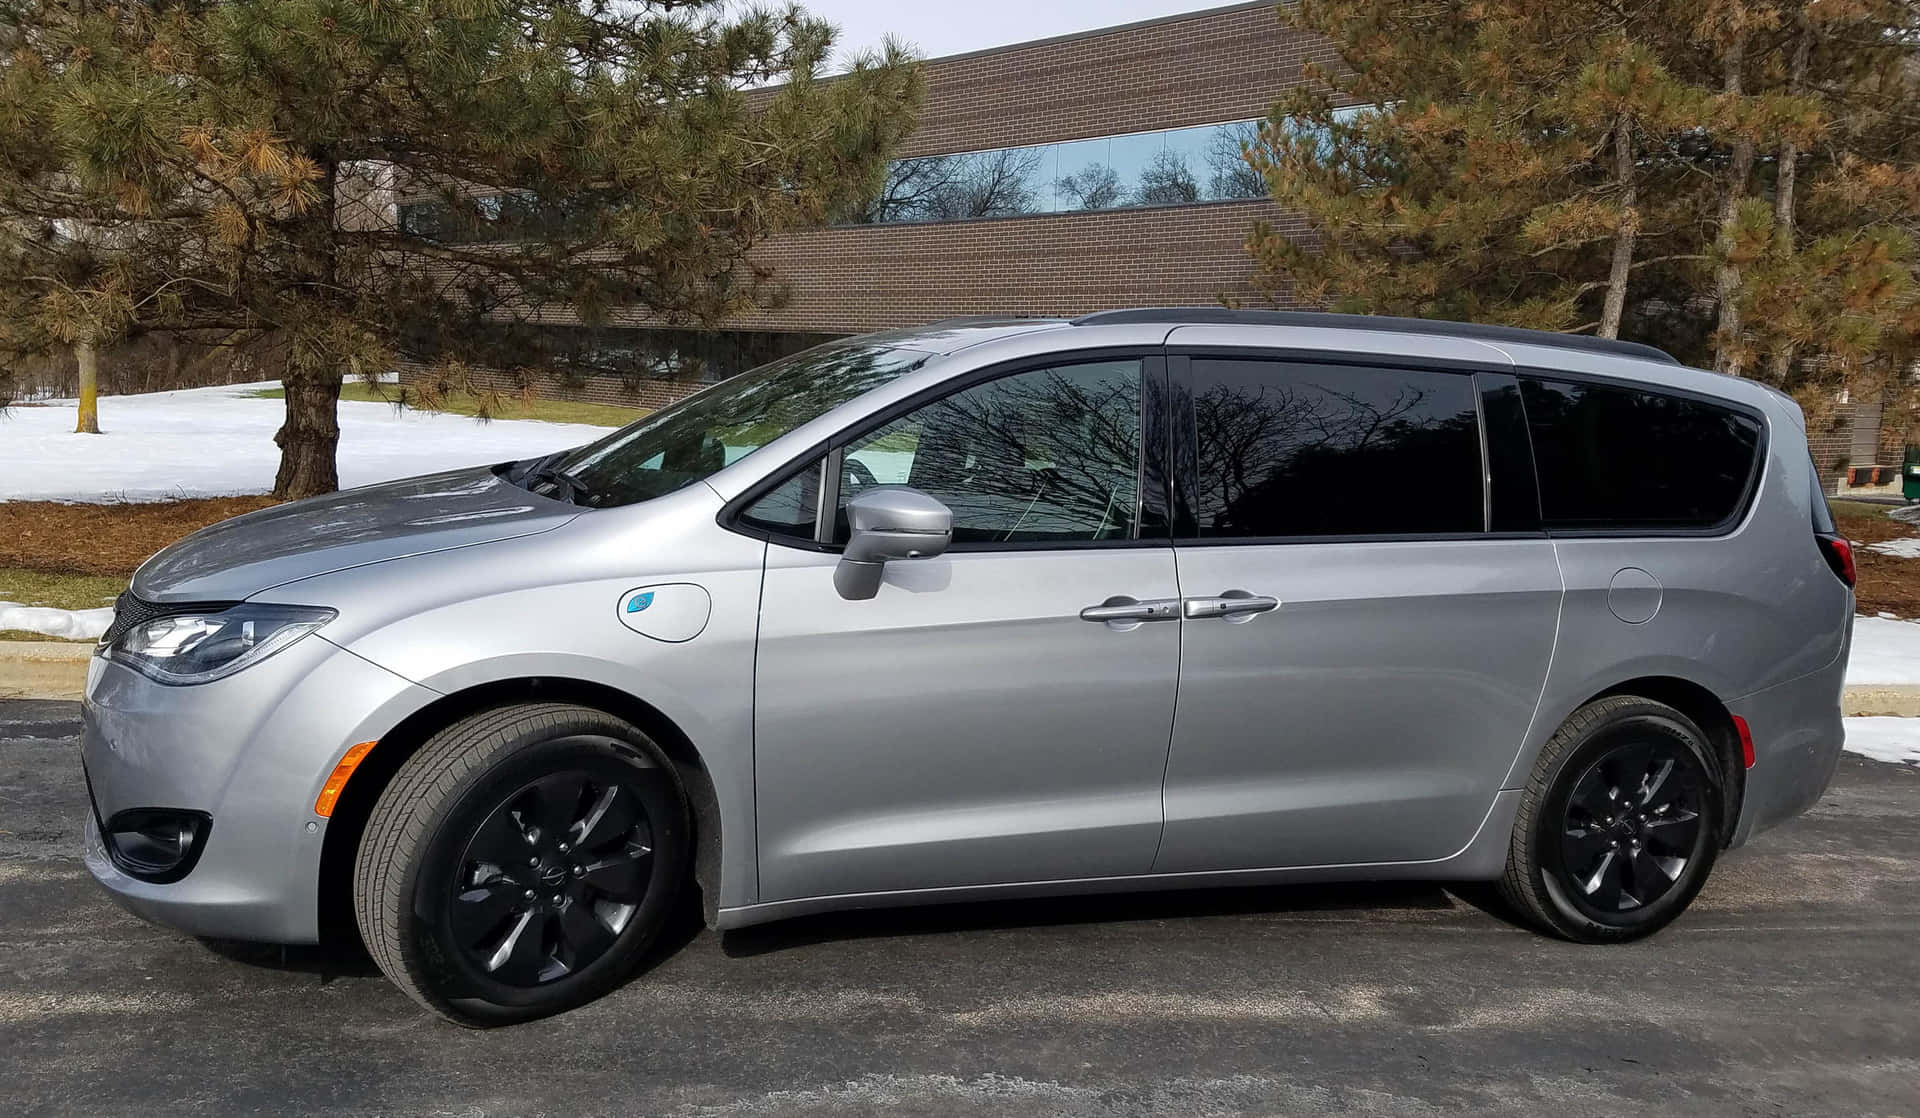 Chryslerpacifica: Experimenta El Lujo Y El Rendimiento En Una Minivan Familiar. Fondo de pantalla